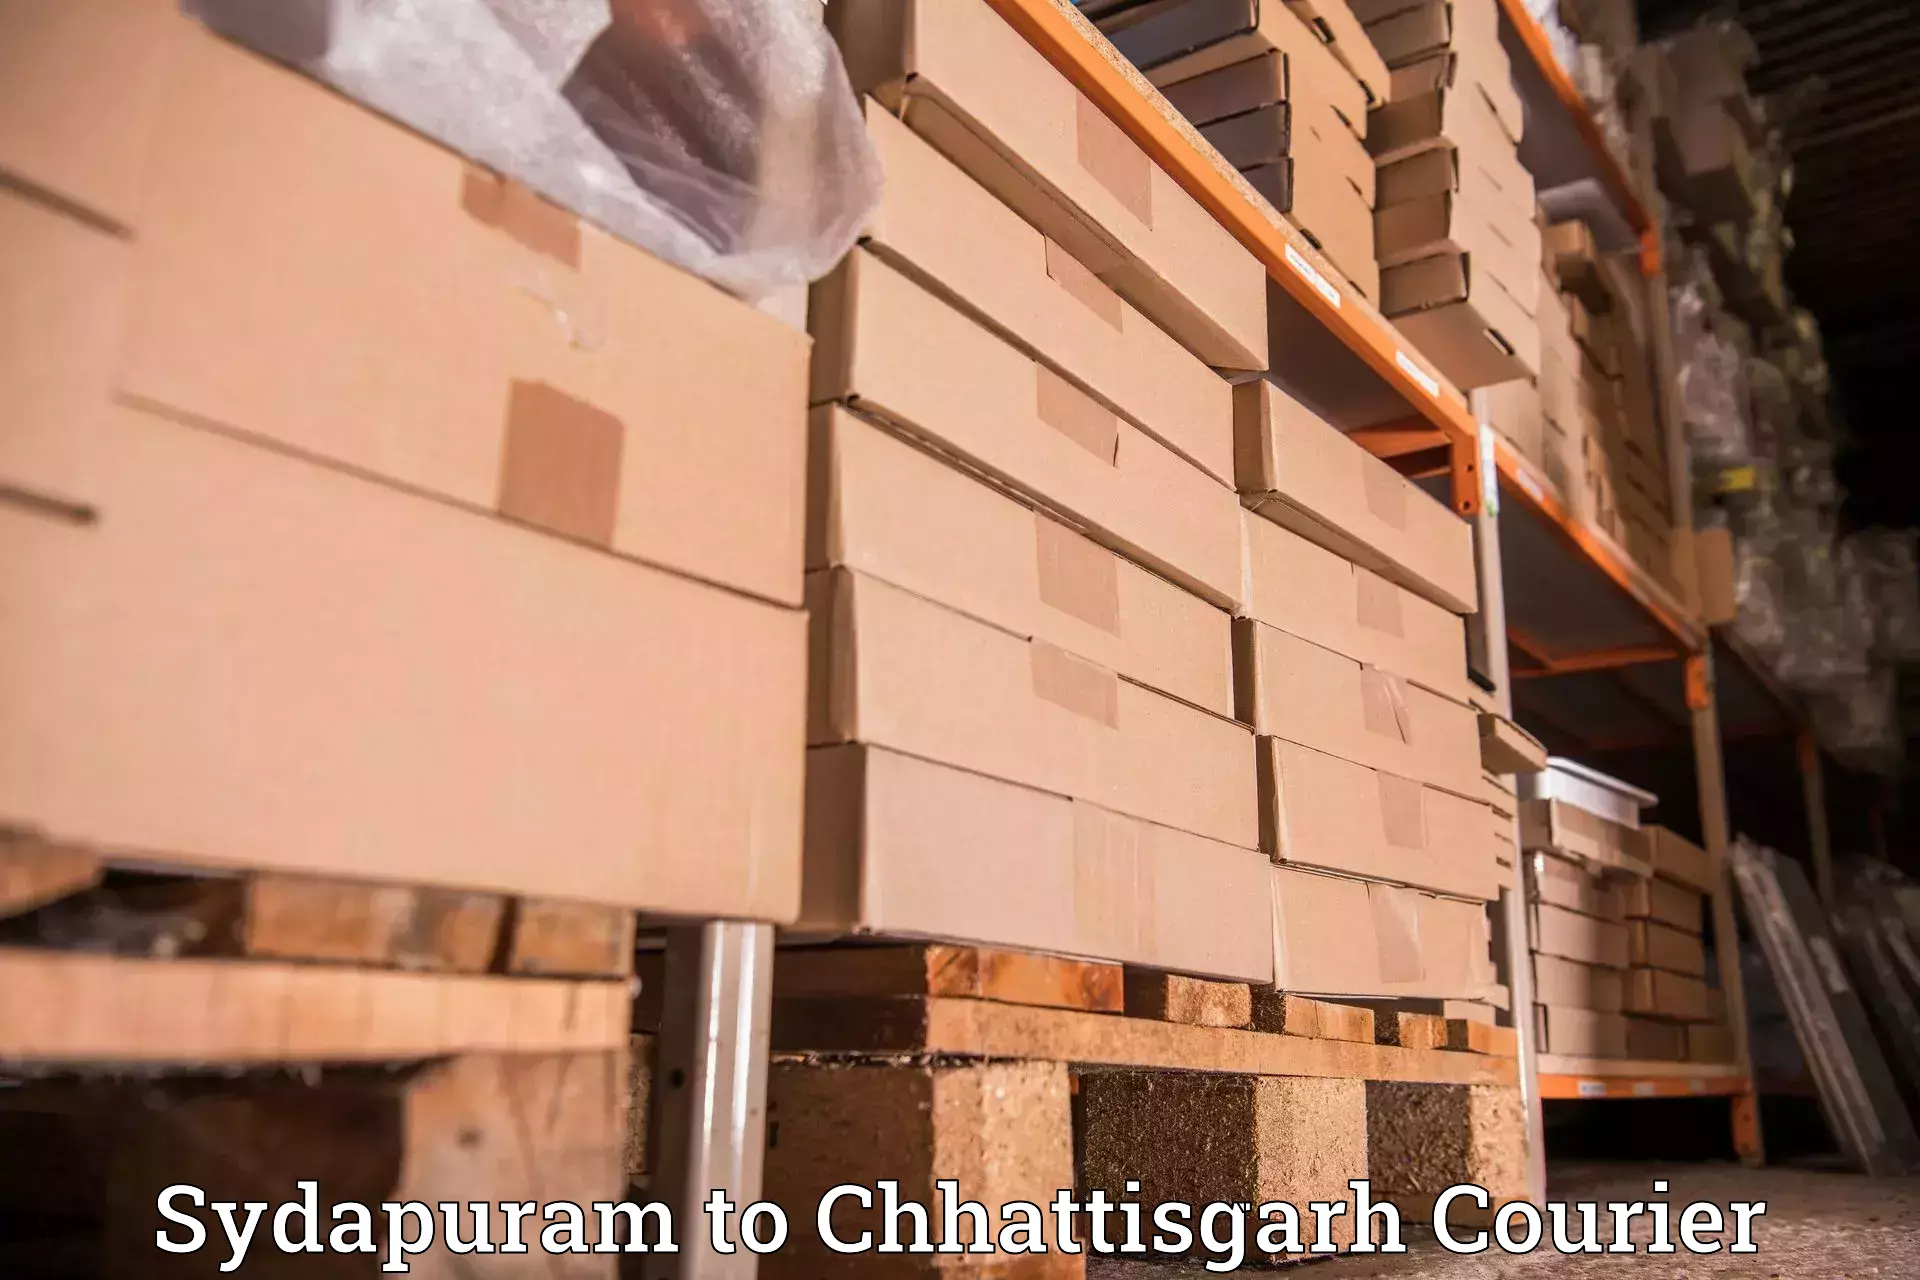 Local delivery service Sydapuram to Manendragarh